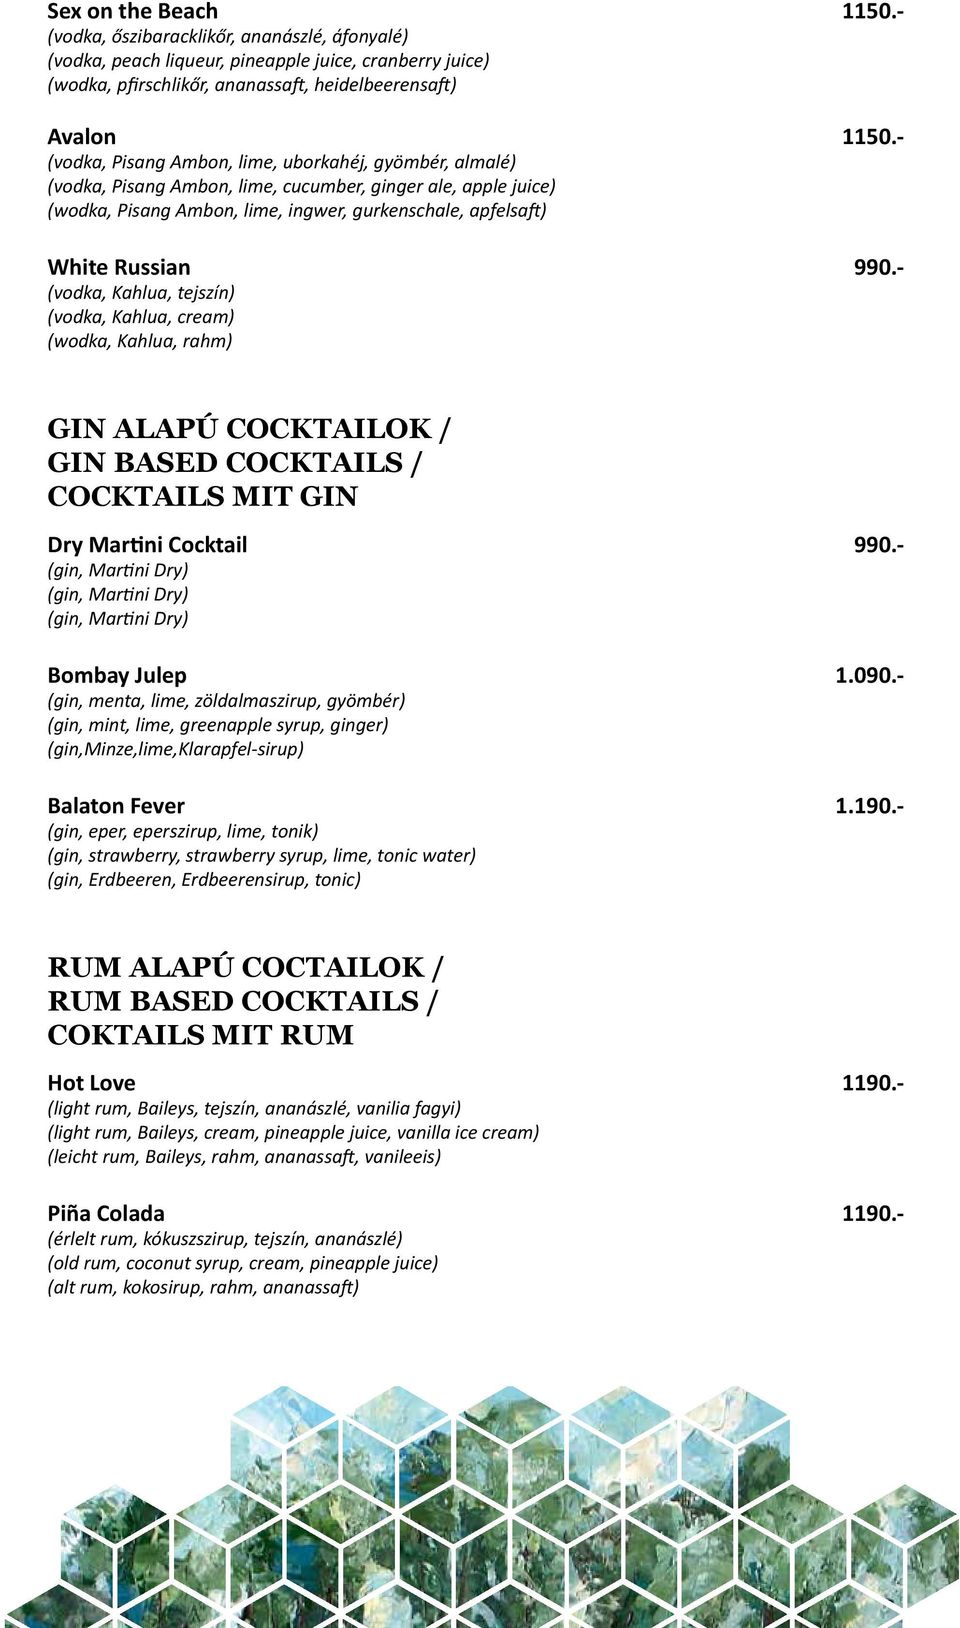 - (vodka, Kahlua, tejszín) (vodka, Kahlua, cream) (wodka, Kahlua, rahm) GIN ALAPÚ COCKTAILOK / GIN BASED COCKTAILS / COCKTAILS MIT GIN Dry Martini Cocktail 990.